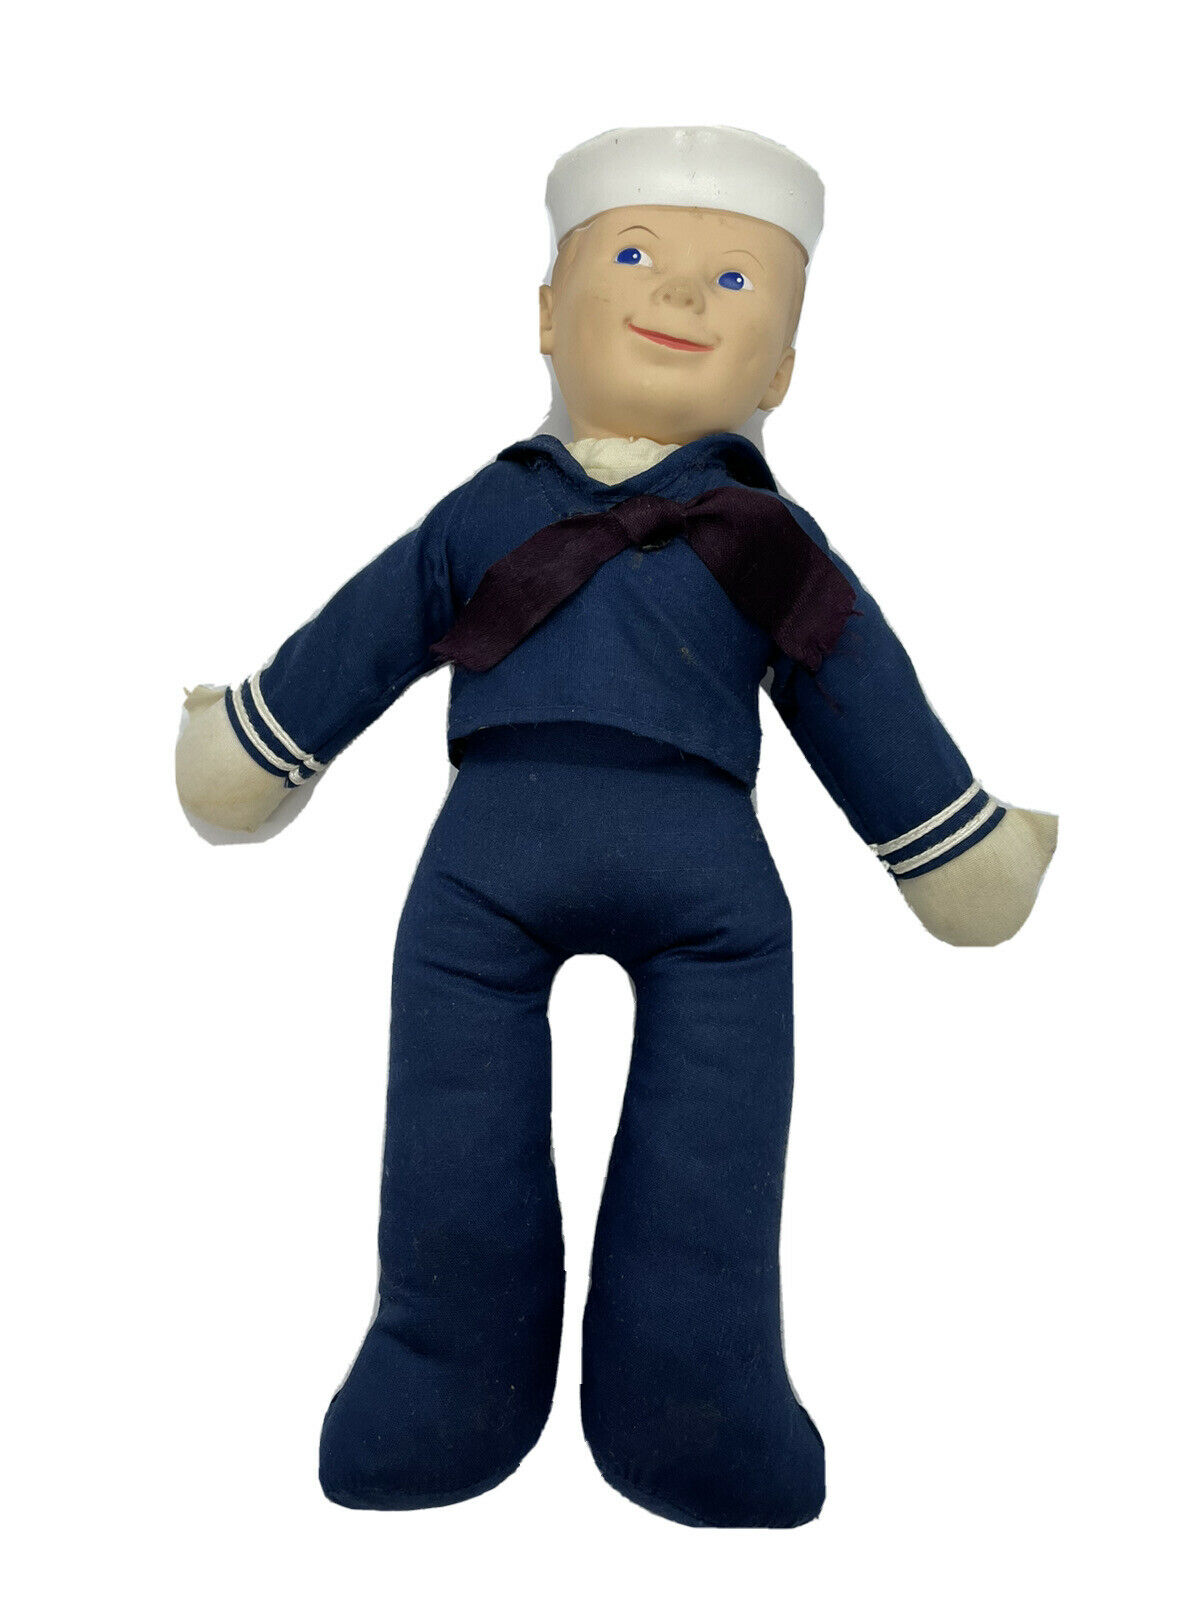 Vintage Vogue Doll Cracker Jack Sailor Man With Original Tag